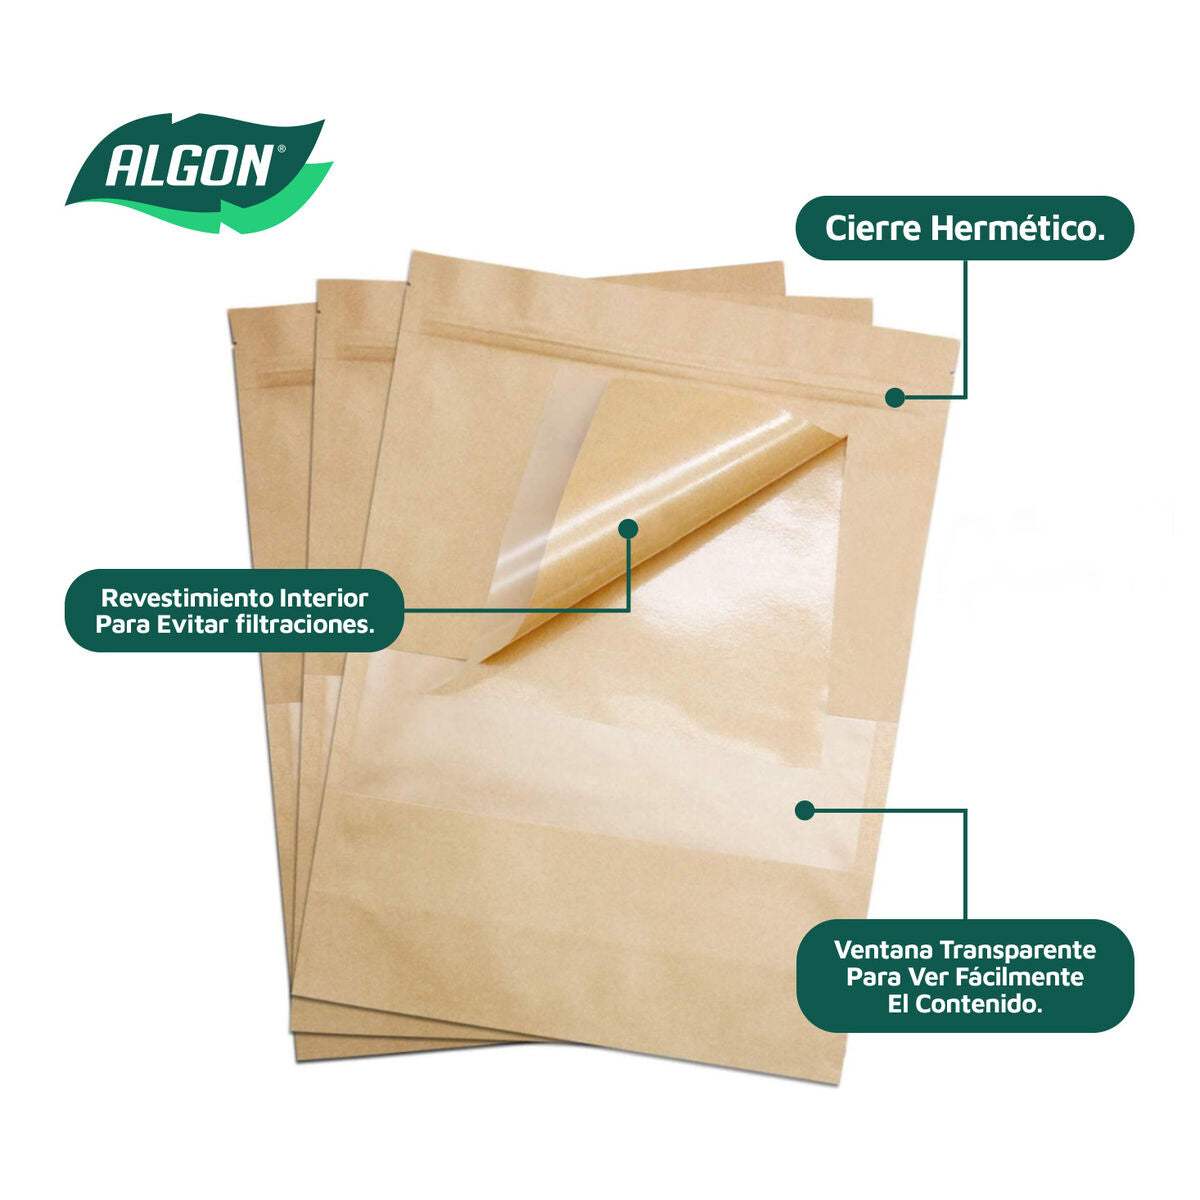 Ensemble de sacs alimentaires réutilisables Algon Fermeture hermétique 17 x 24 x 4 cm 15 Unités